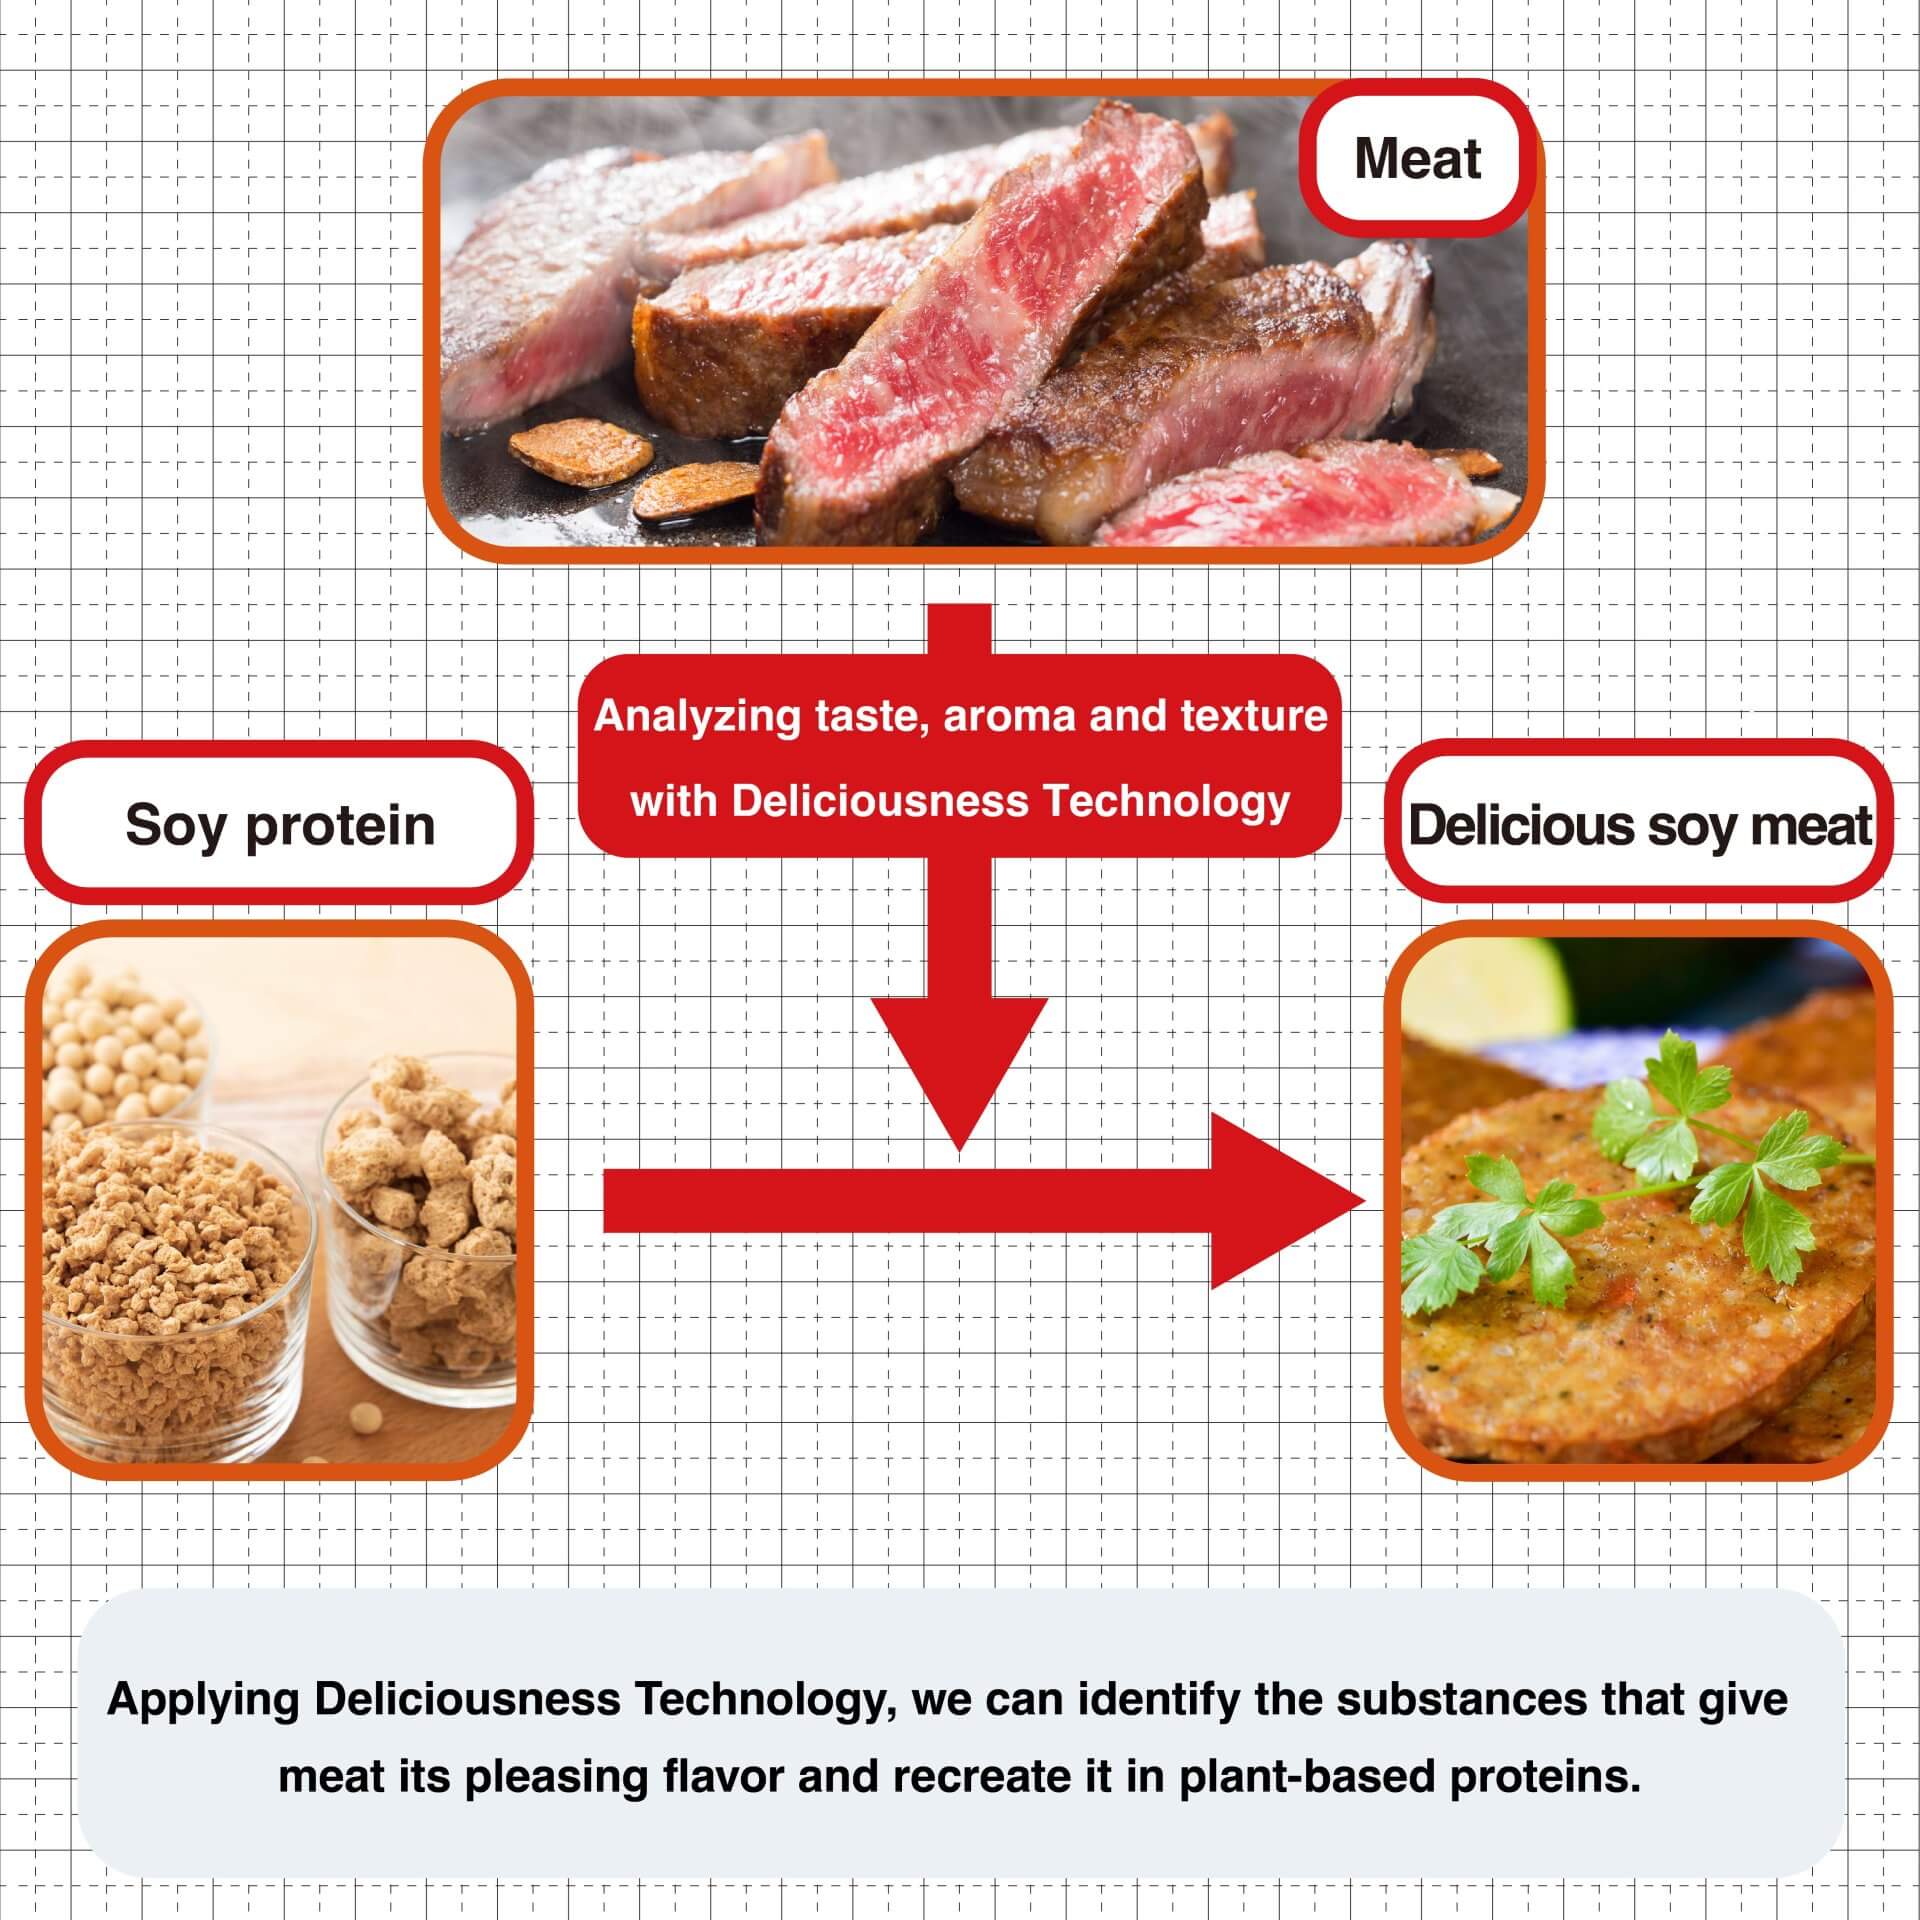 Aplicando a Tecnologia Deliciousness, podemos identificar as substâncias que conferem à carne seu sabor agradável e recriá-lo em proteínas vegetais.